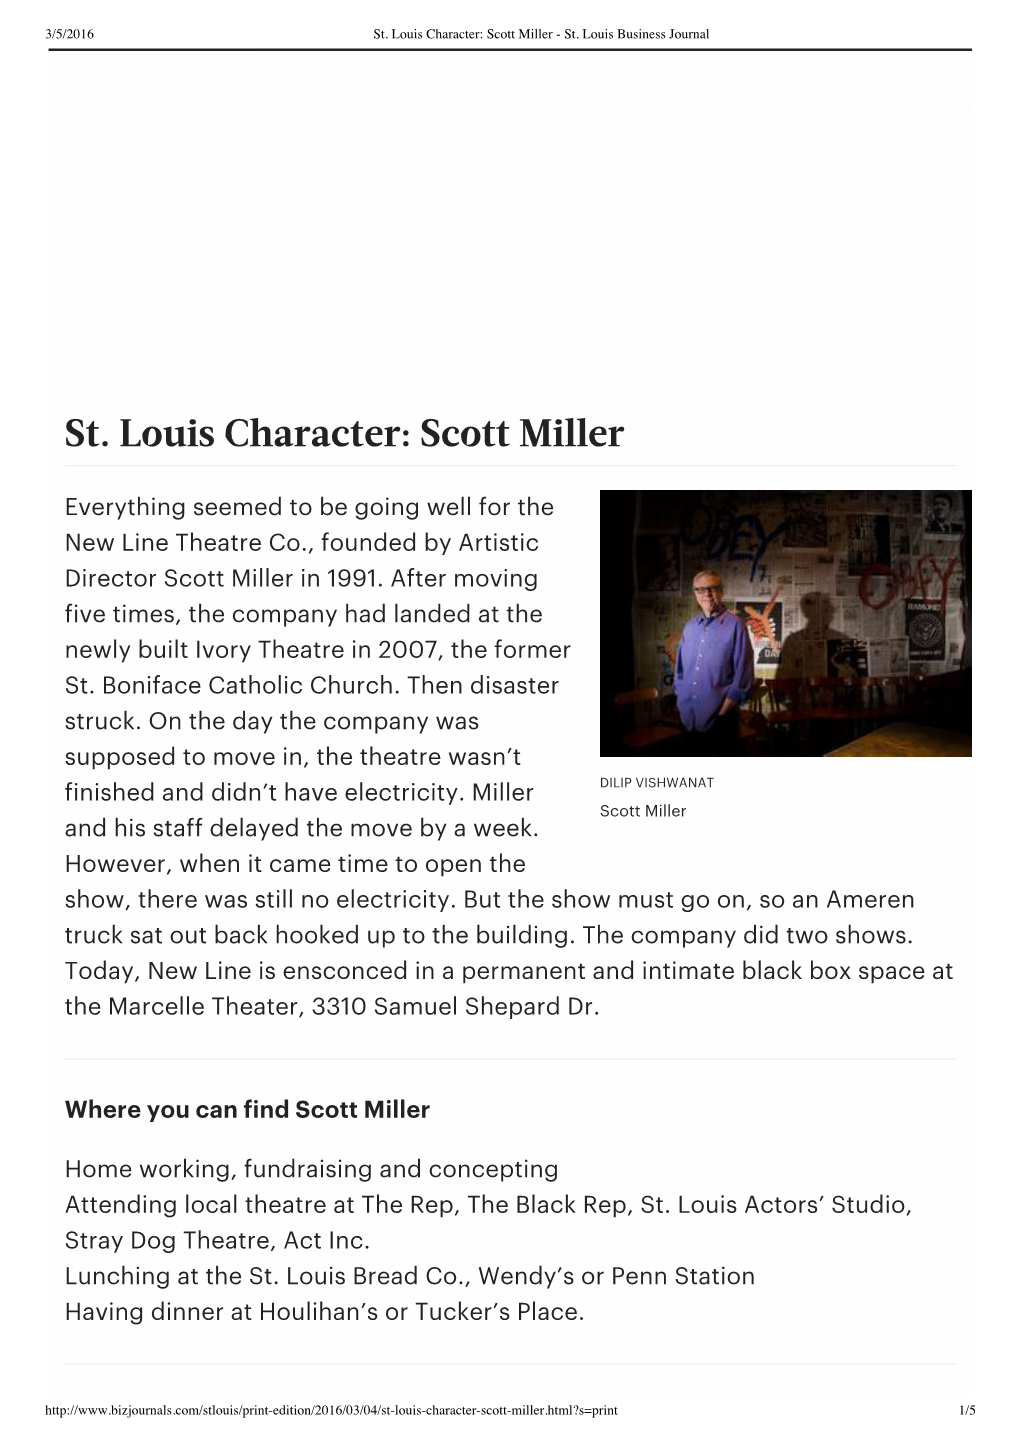 Scott Miller - St